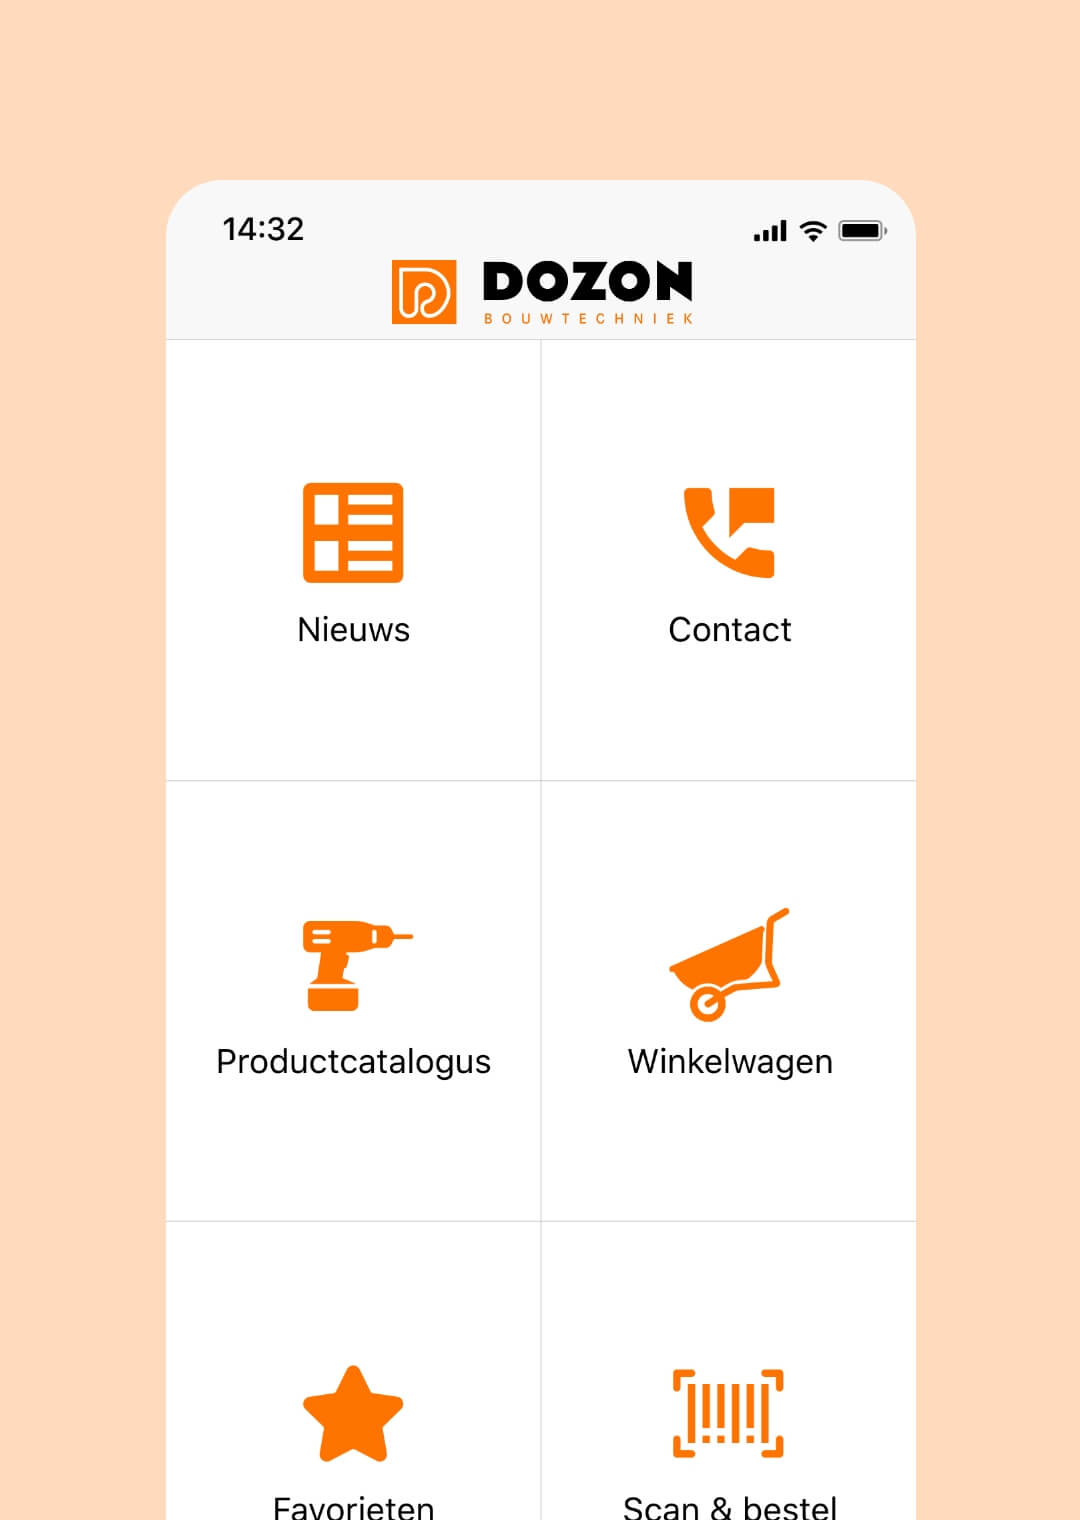 dozon-image-12x